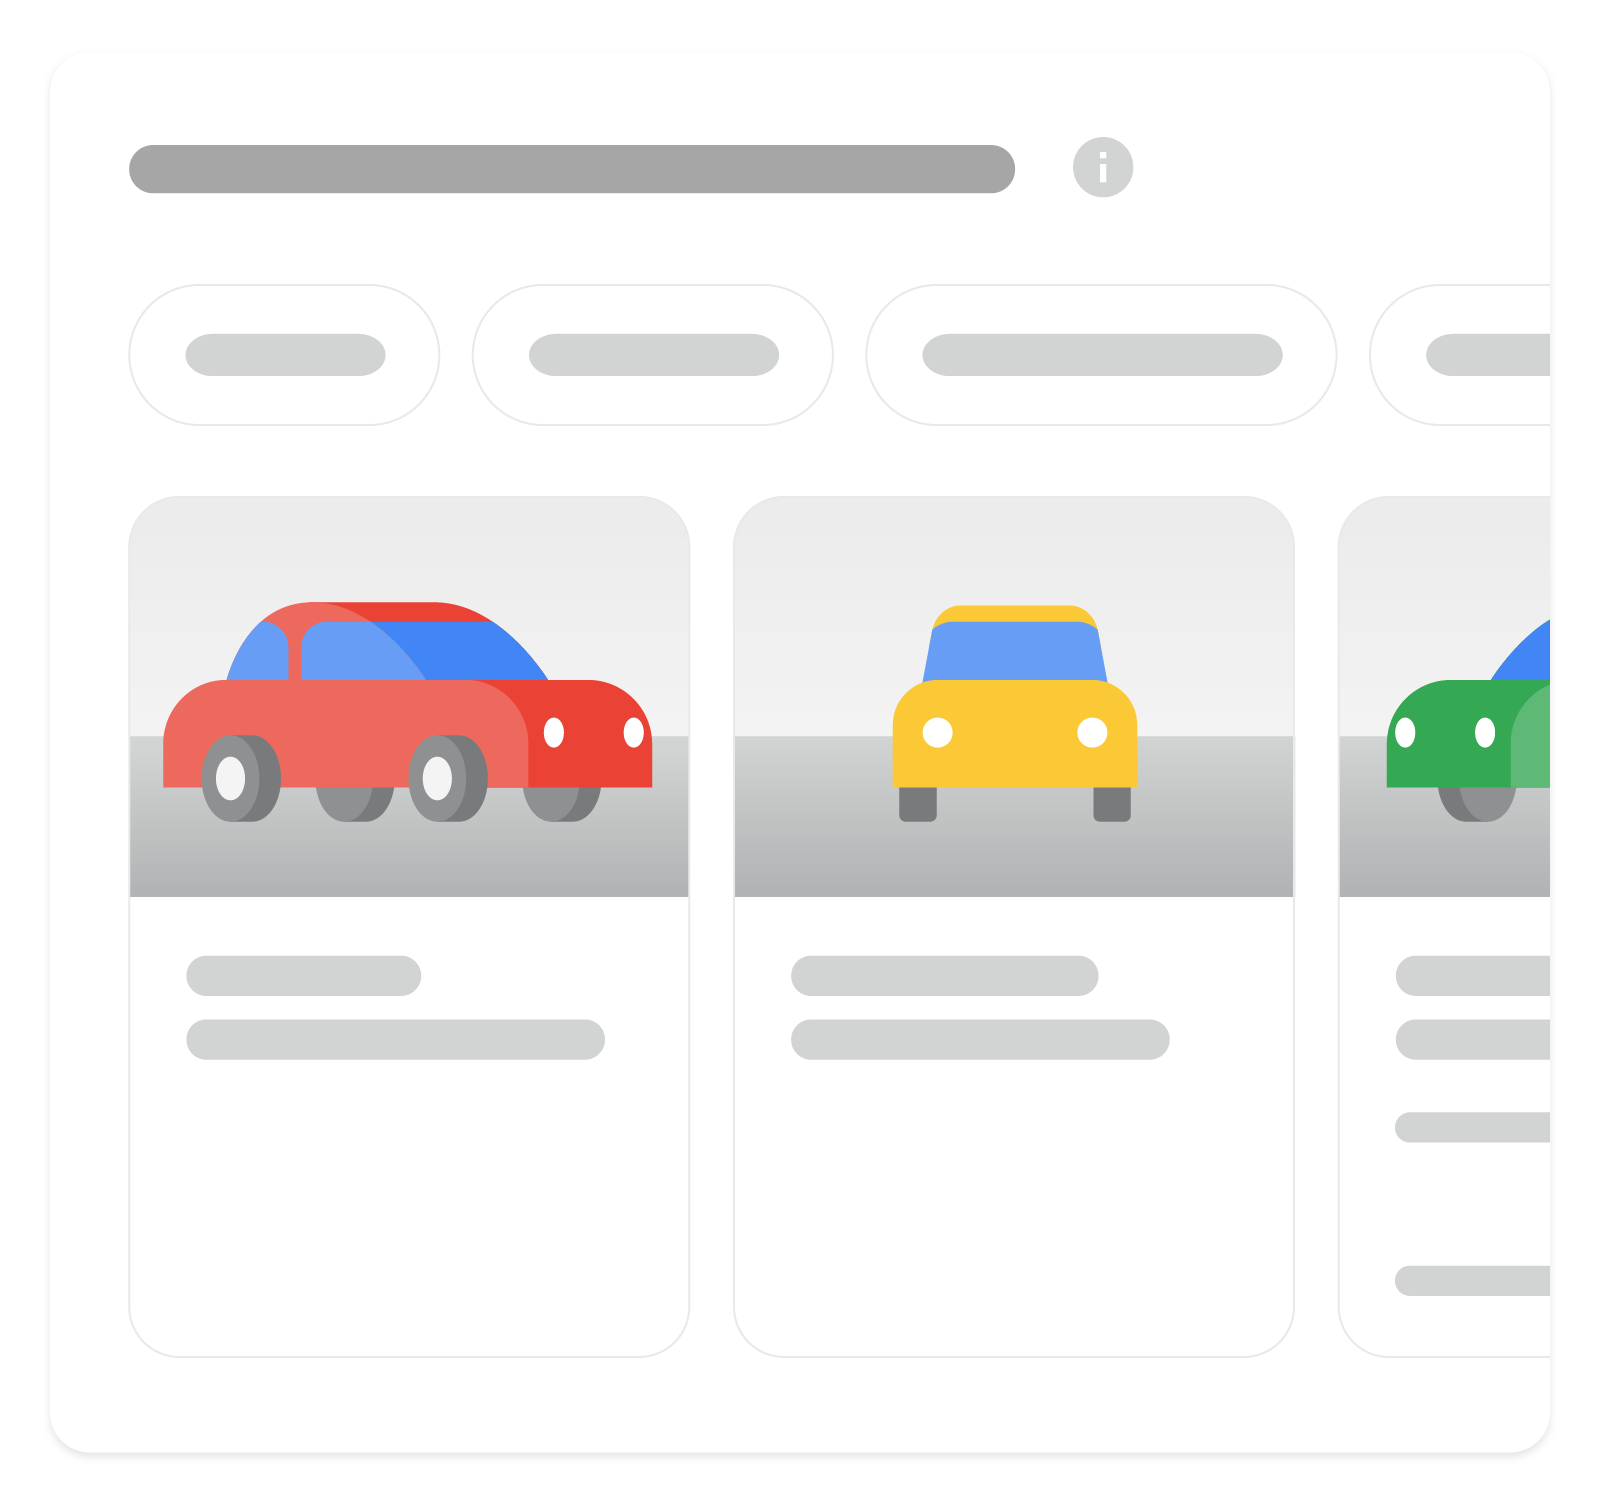 ilustracja przedstawiająca wyniki z elementami rozszerzonymi dotyczące informacji o pojazdach